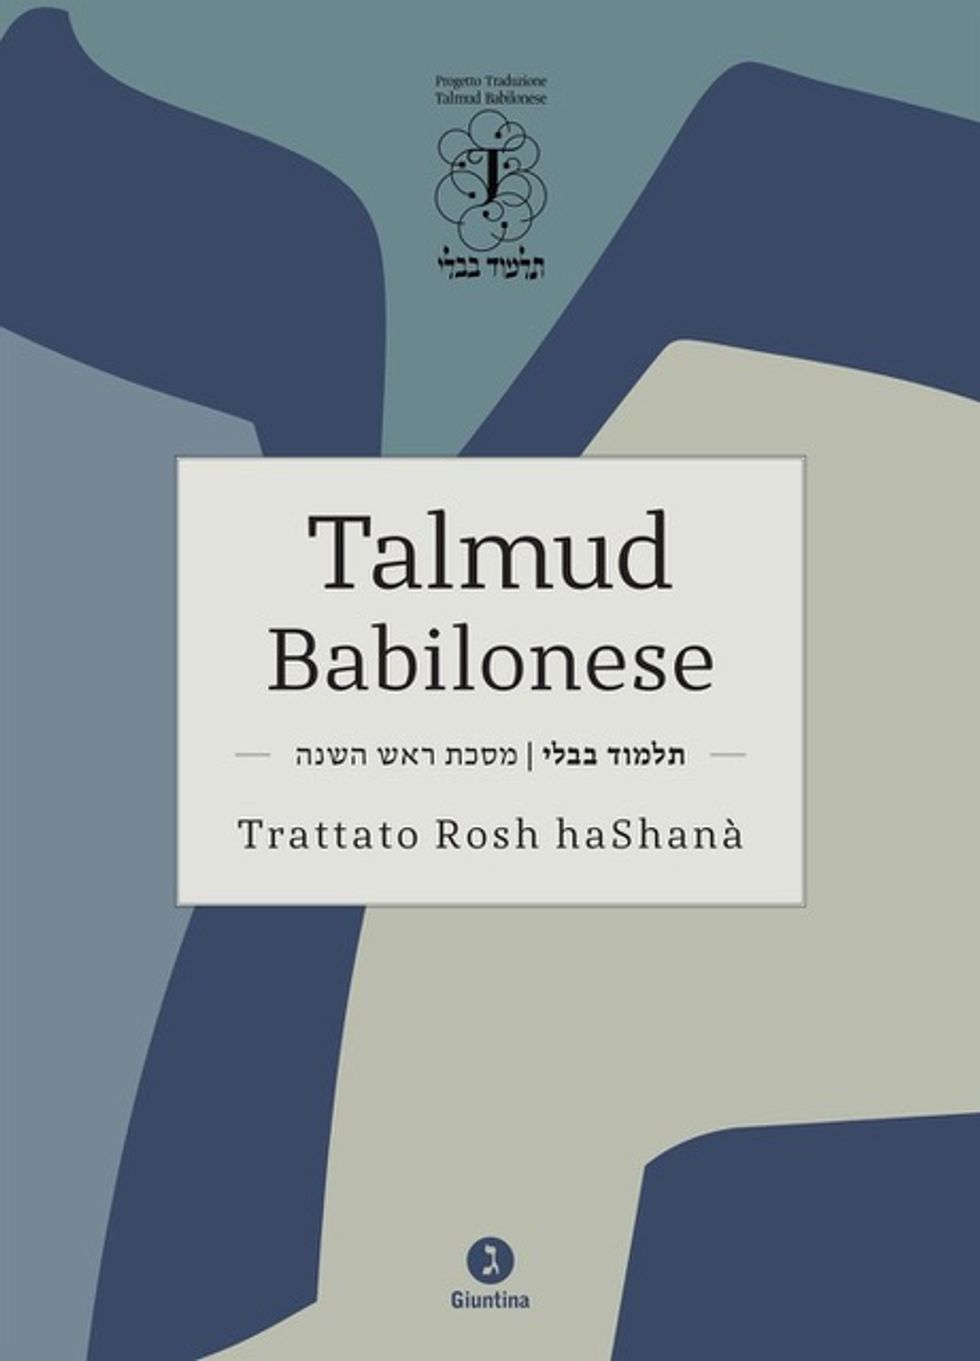 progetto talmud babilonese software traduzione